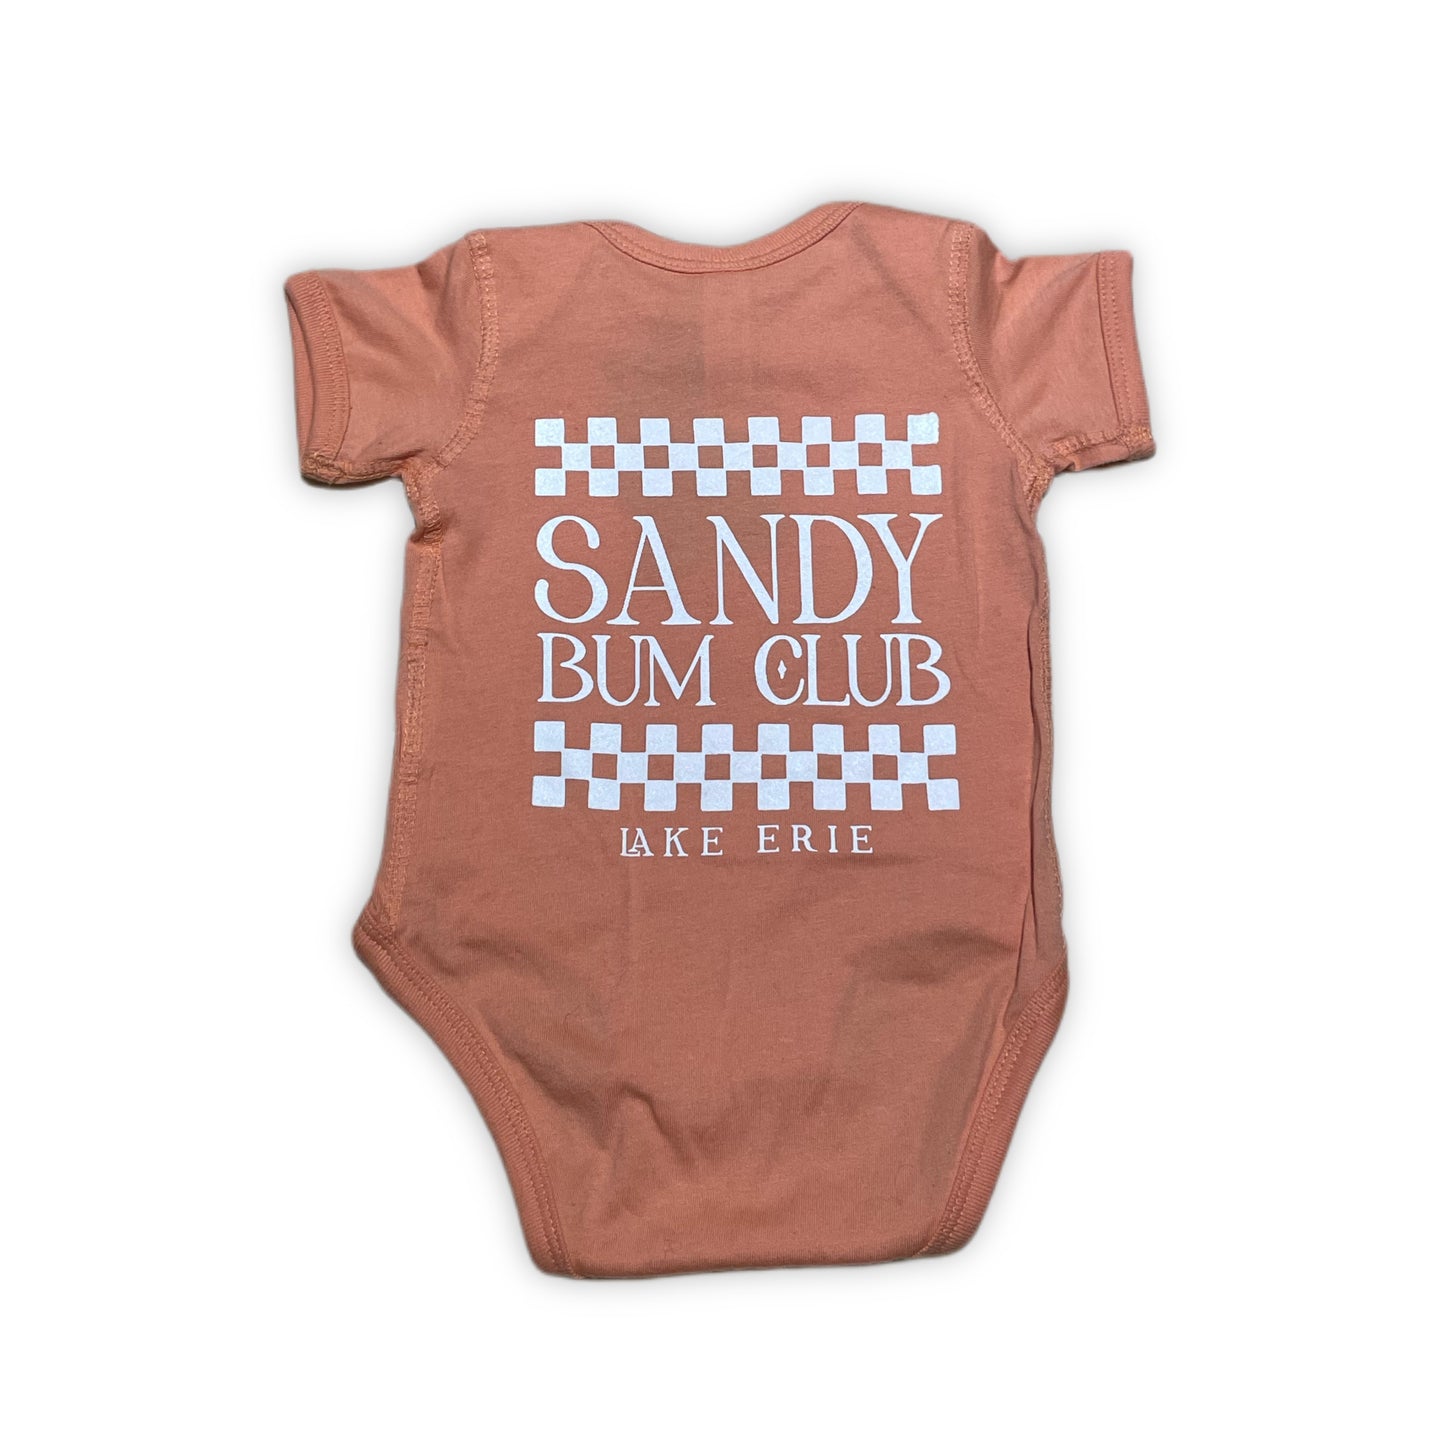 Sandy Bum Club Baby Onesie - Sunset